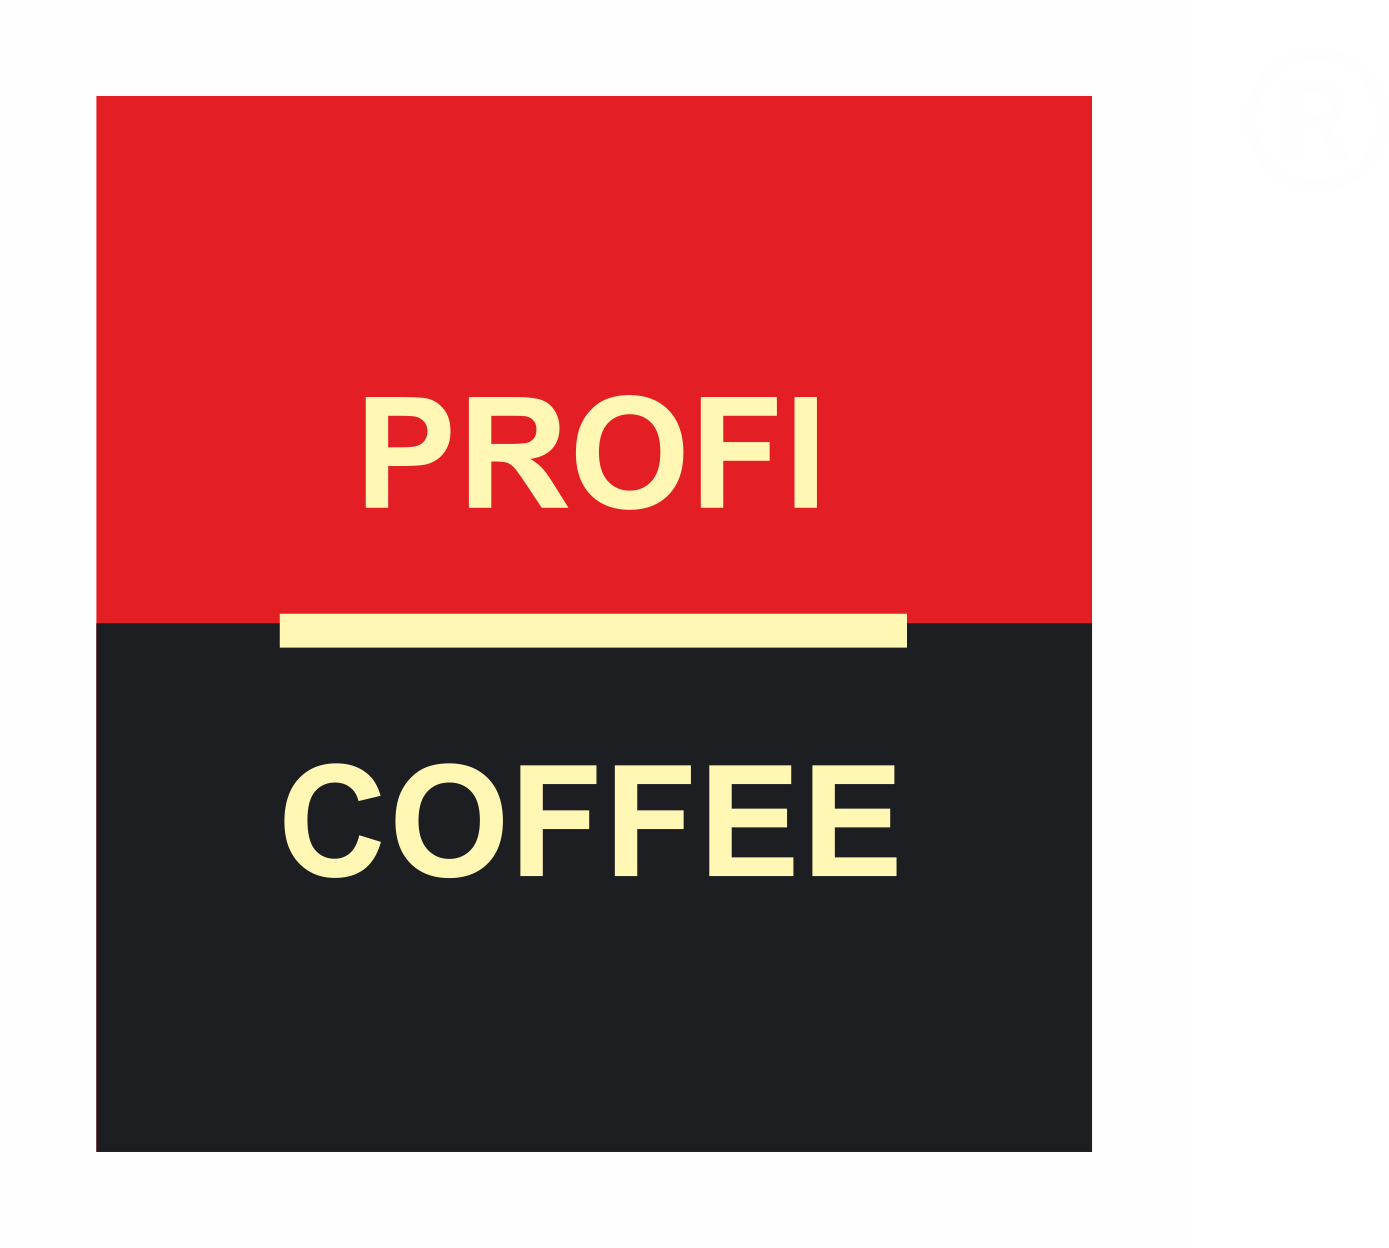 PROFI COFFE